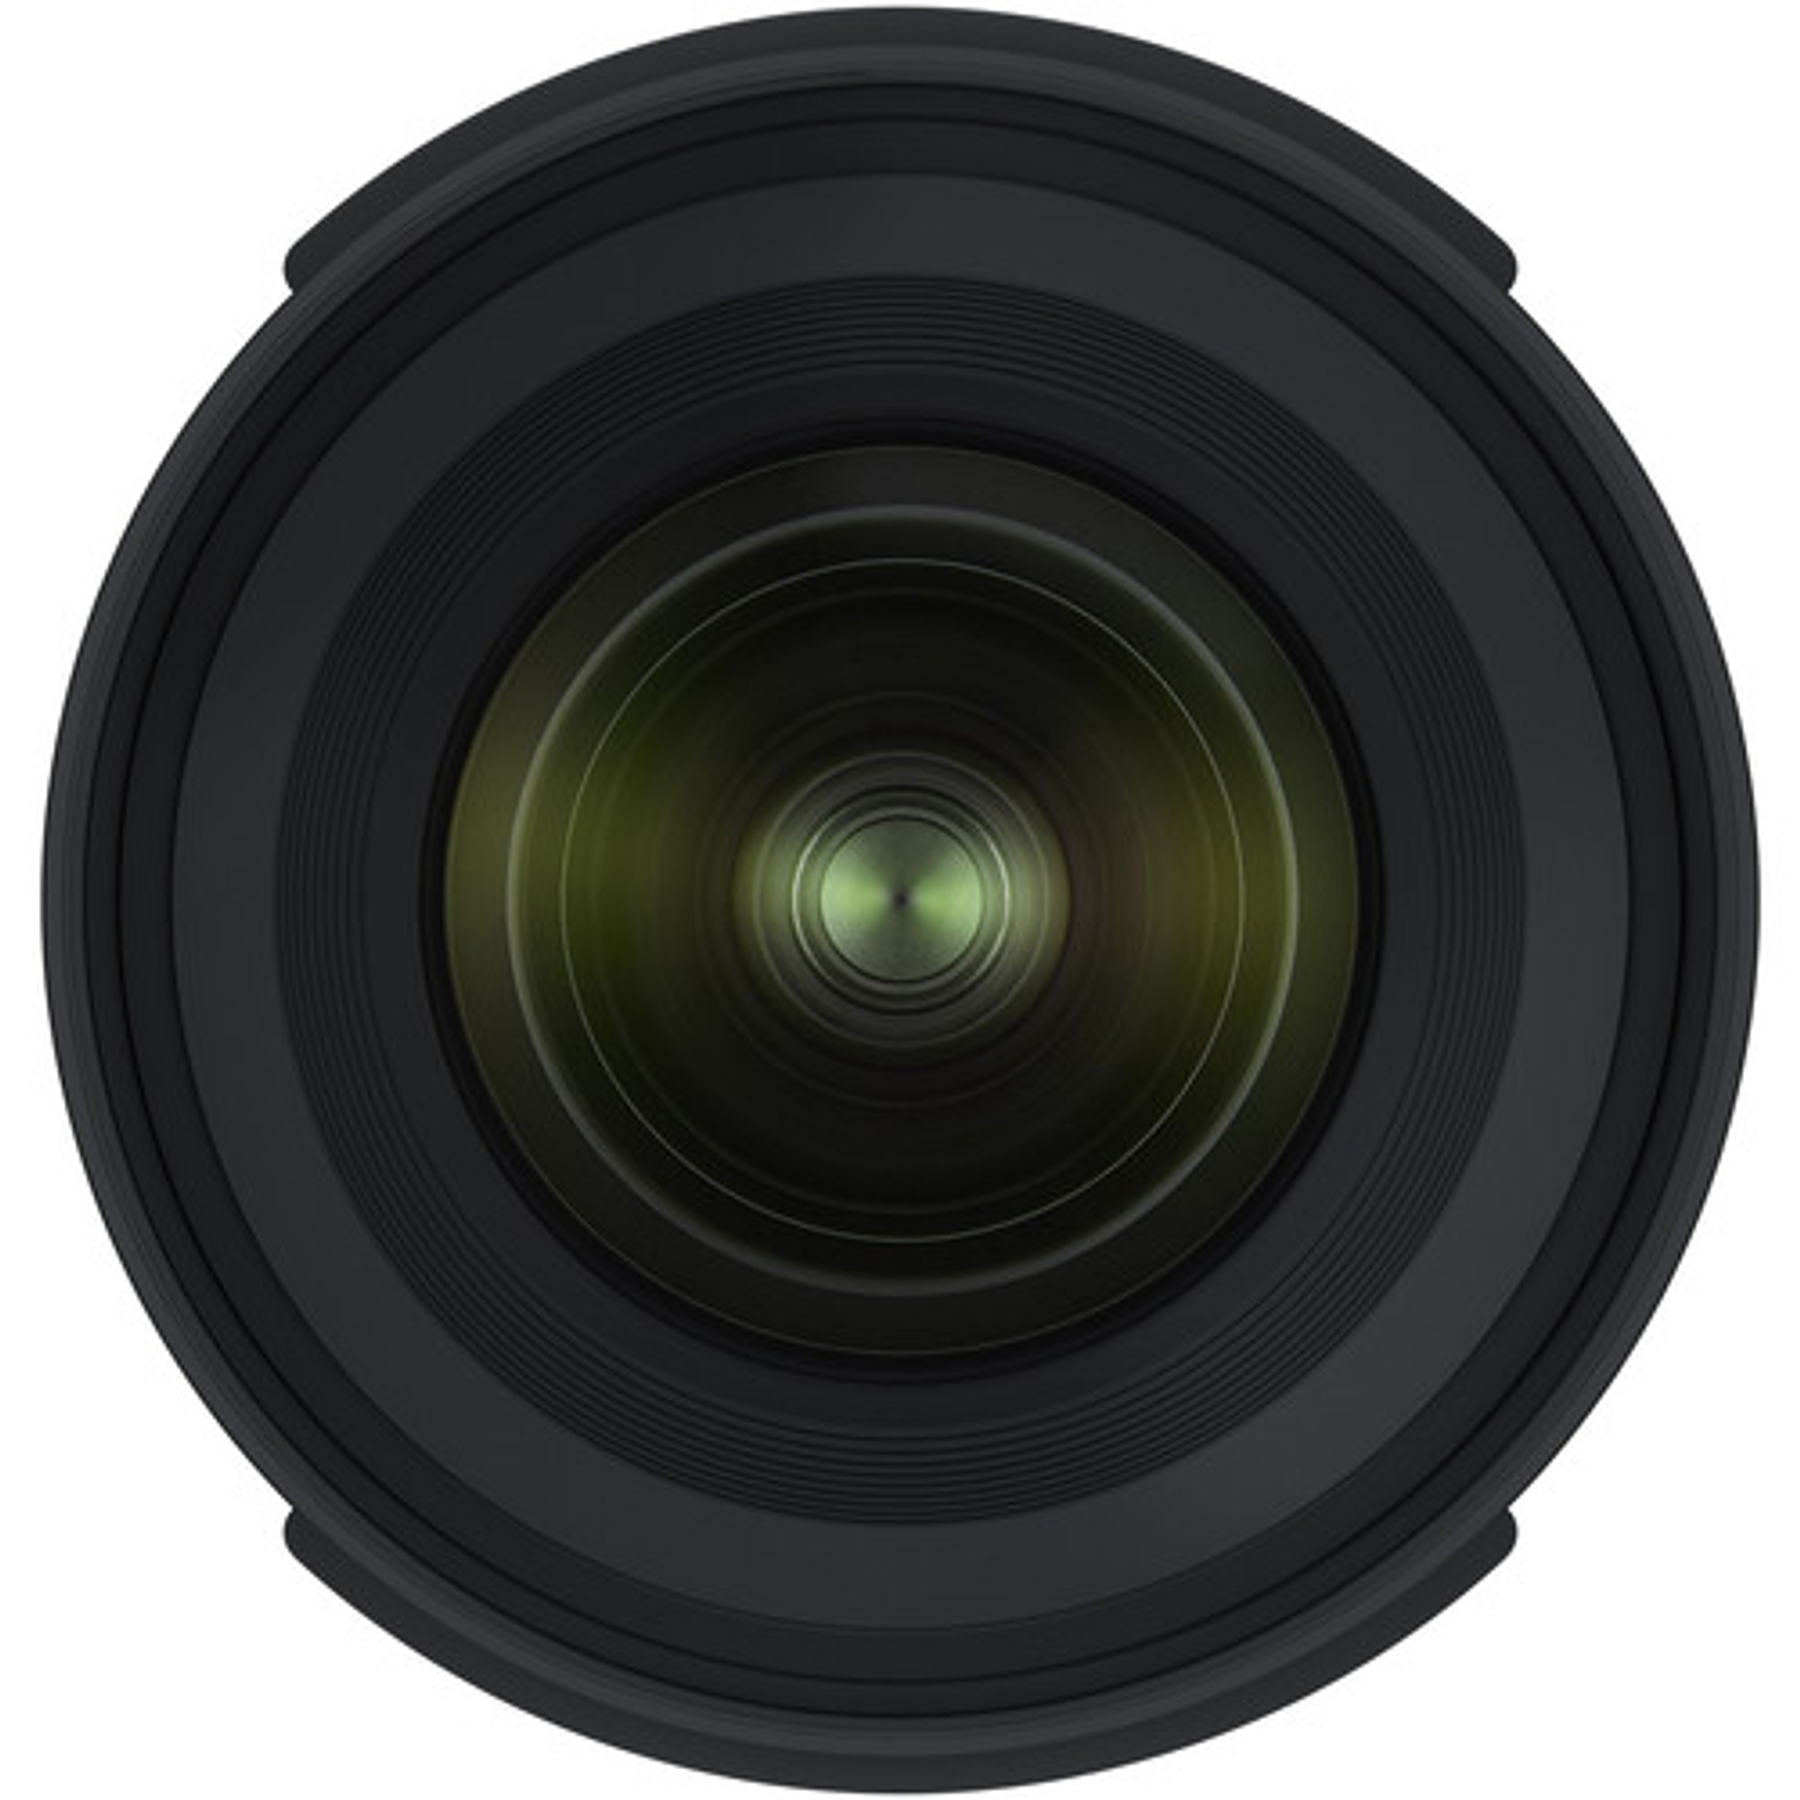 Tamron Lente 17-35mm F/2.8-4 Di OSD para Canon/Nikon